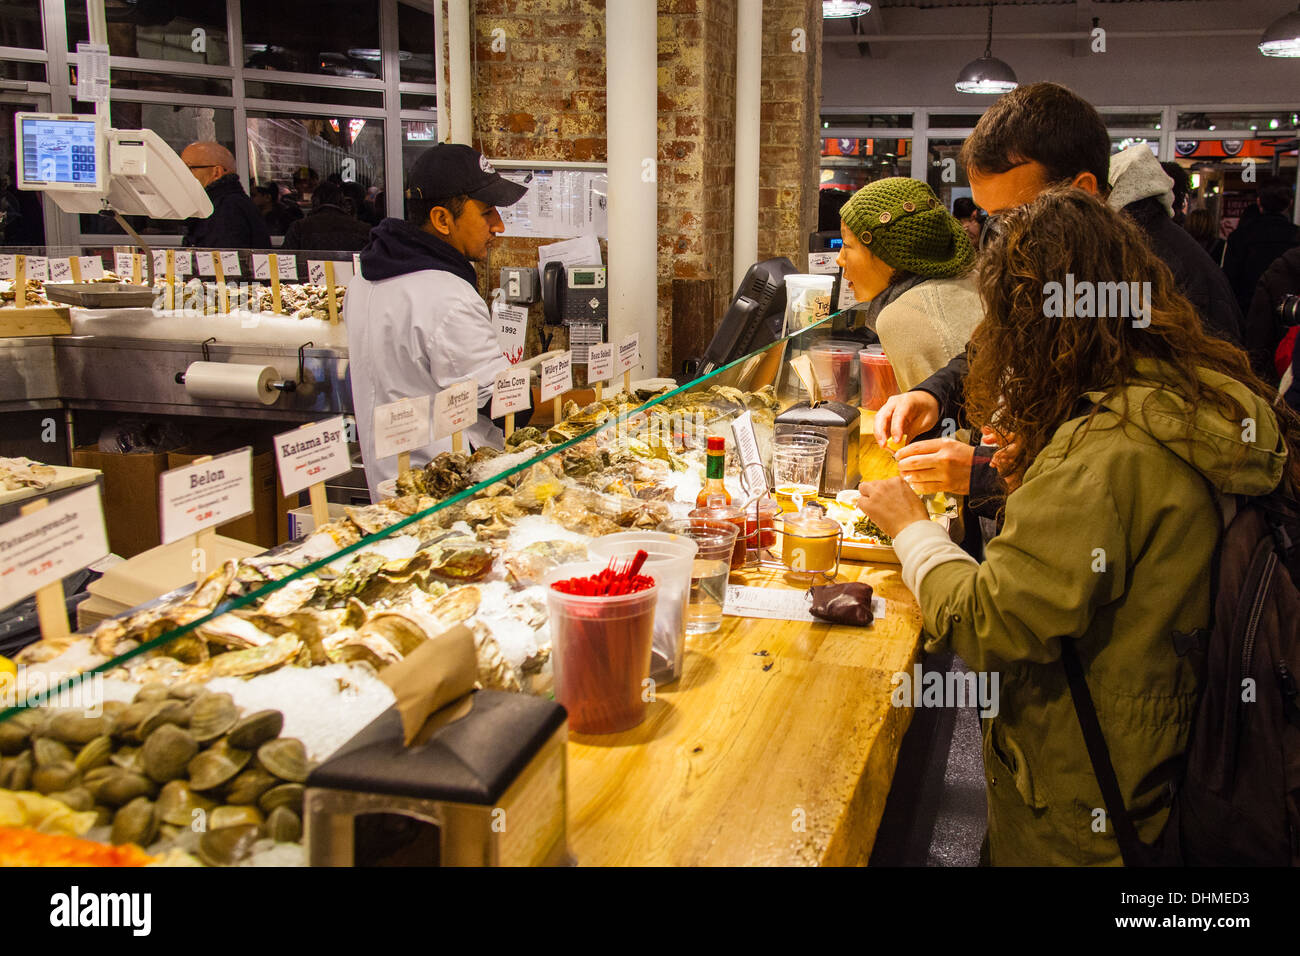 Il Lobster posto a base di pesce o di mercato pescivendoli, Chelsea mercato alimentare, New York City, Stati Uniti d'America. Foto Stock